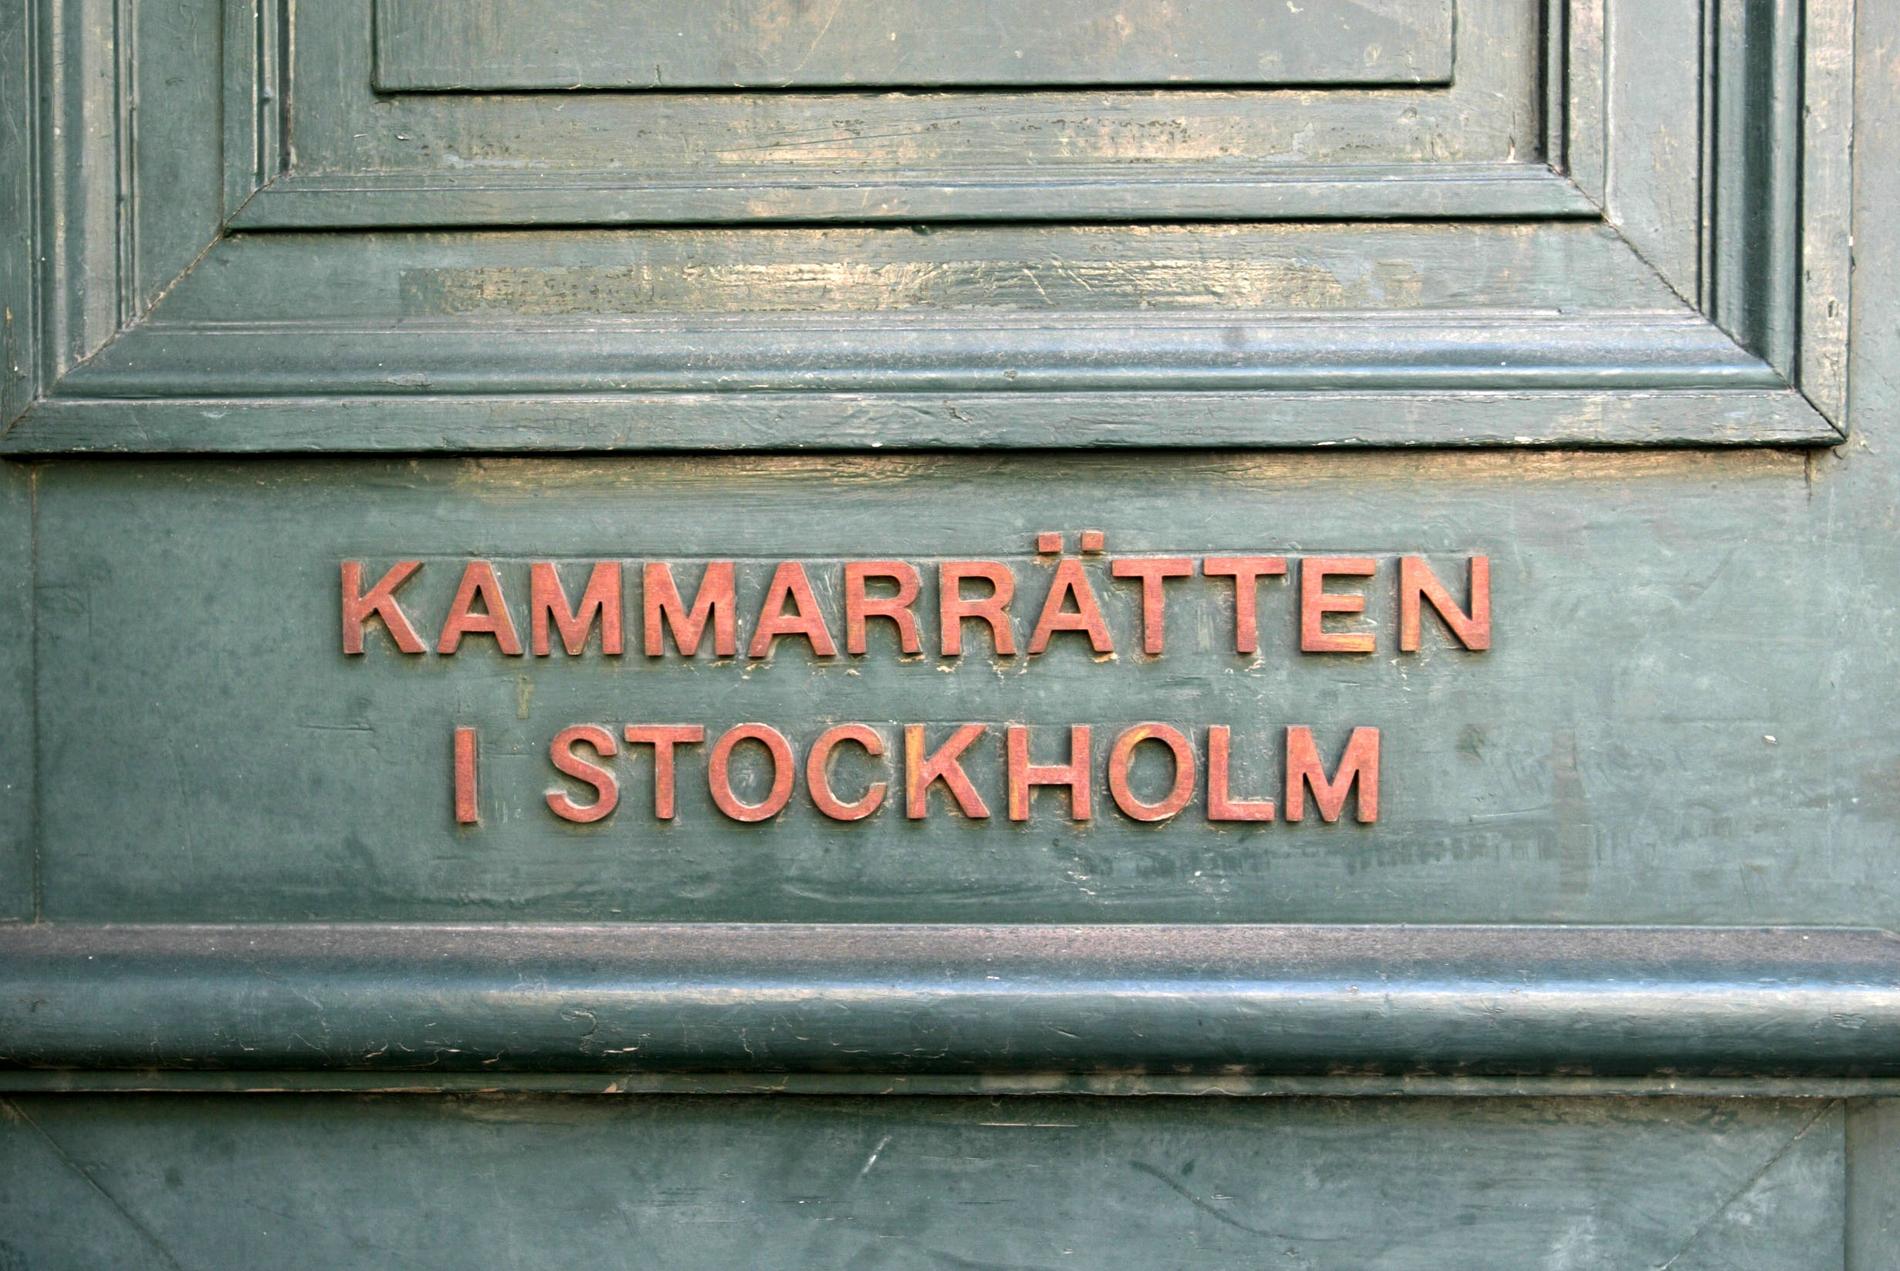 Migrationsöverdomstolen är en del av kammarrätten i Stockholm. Arkivbild.